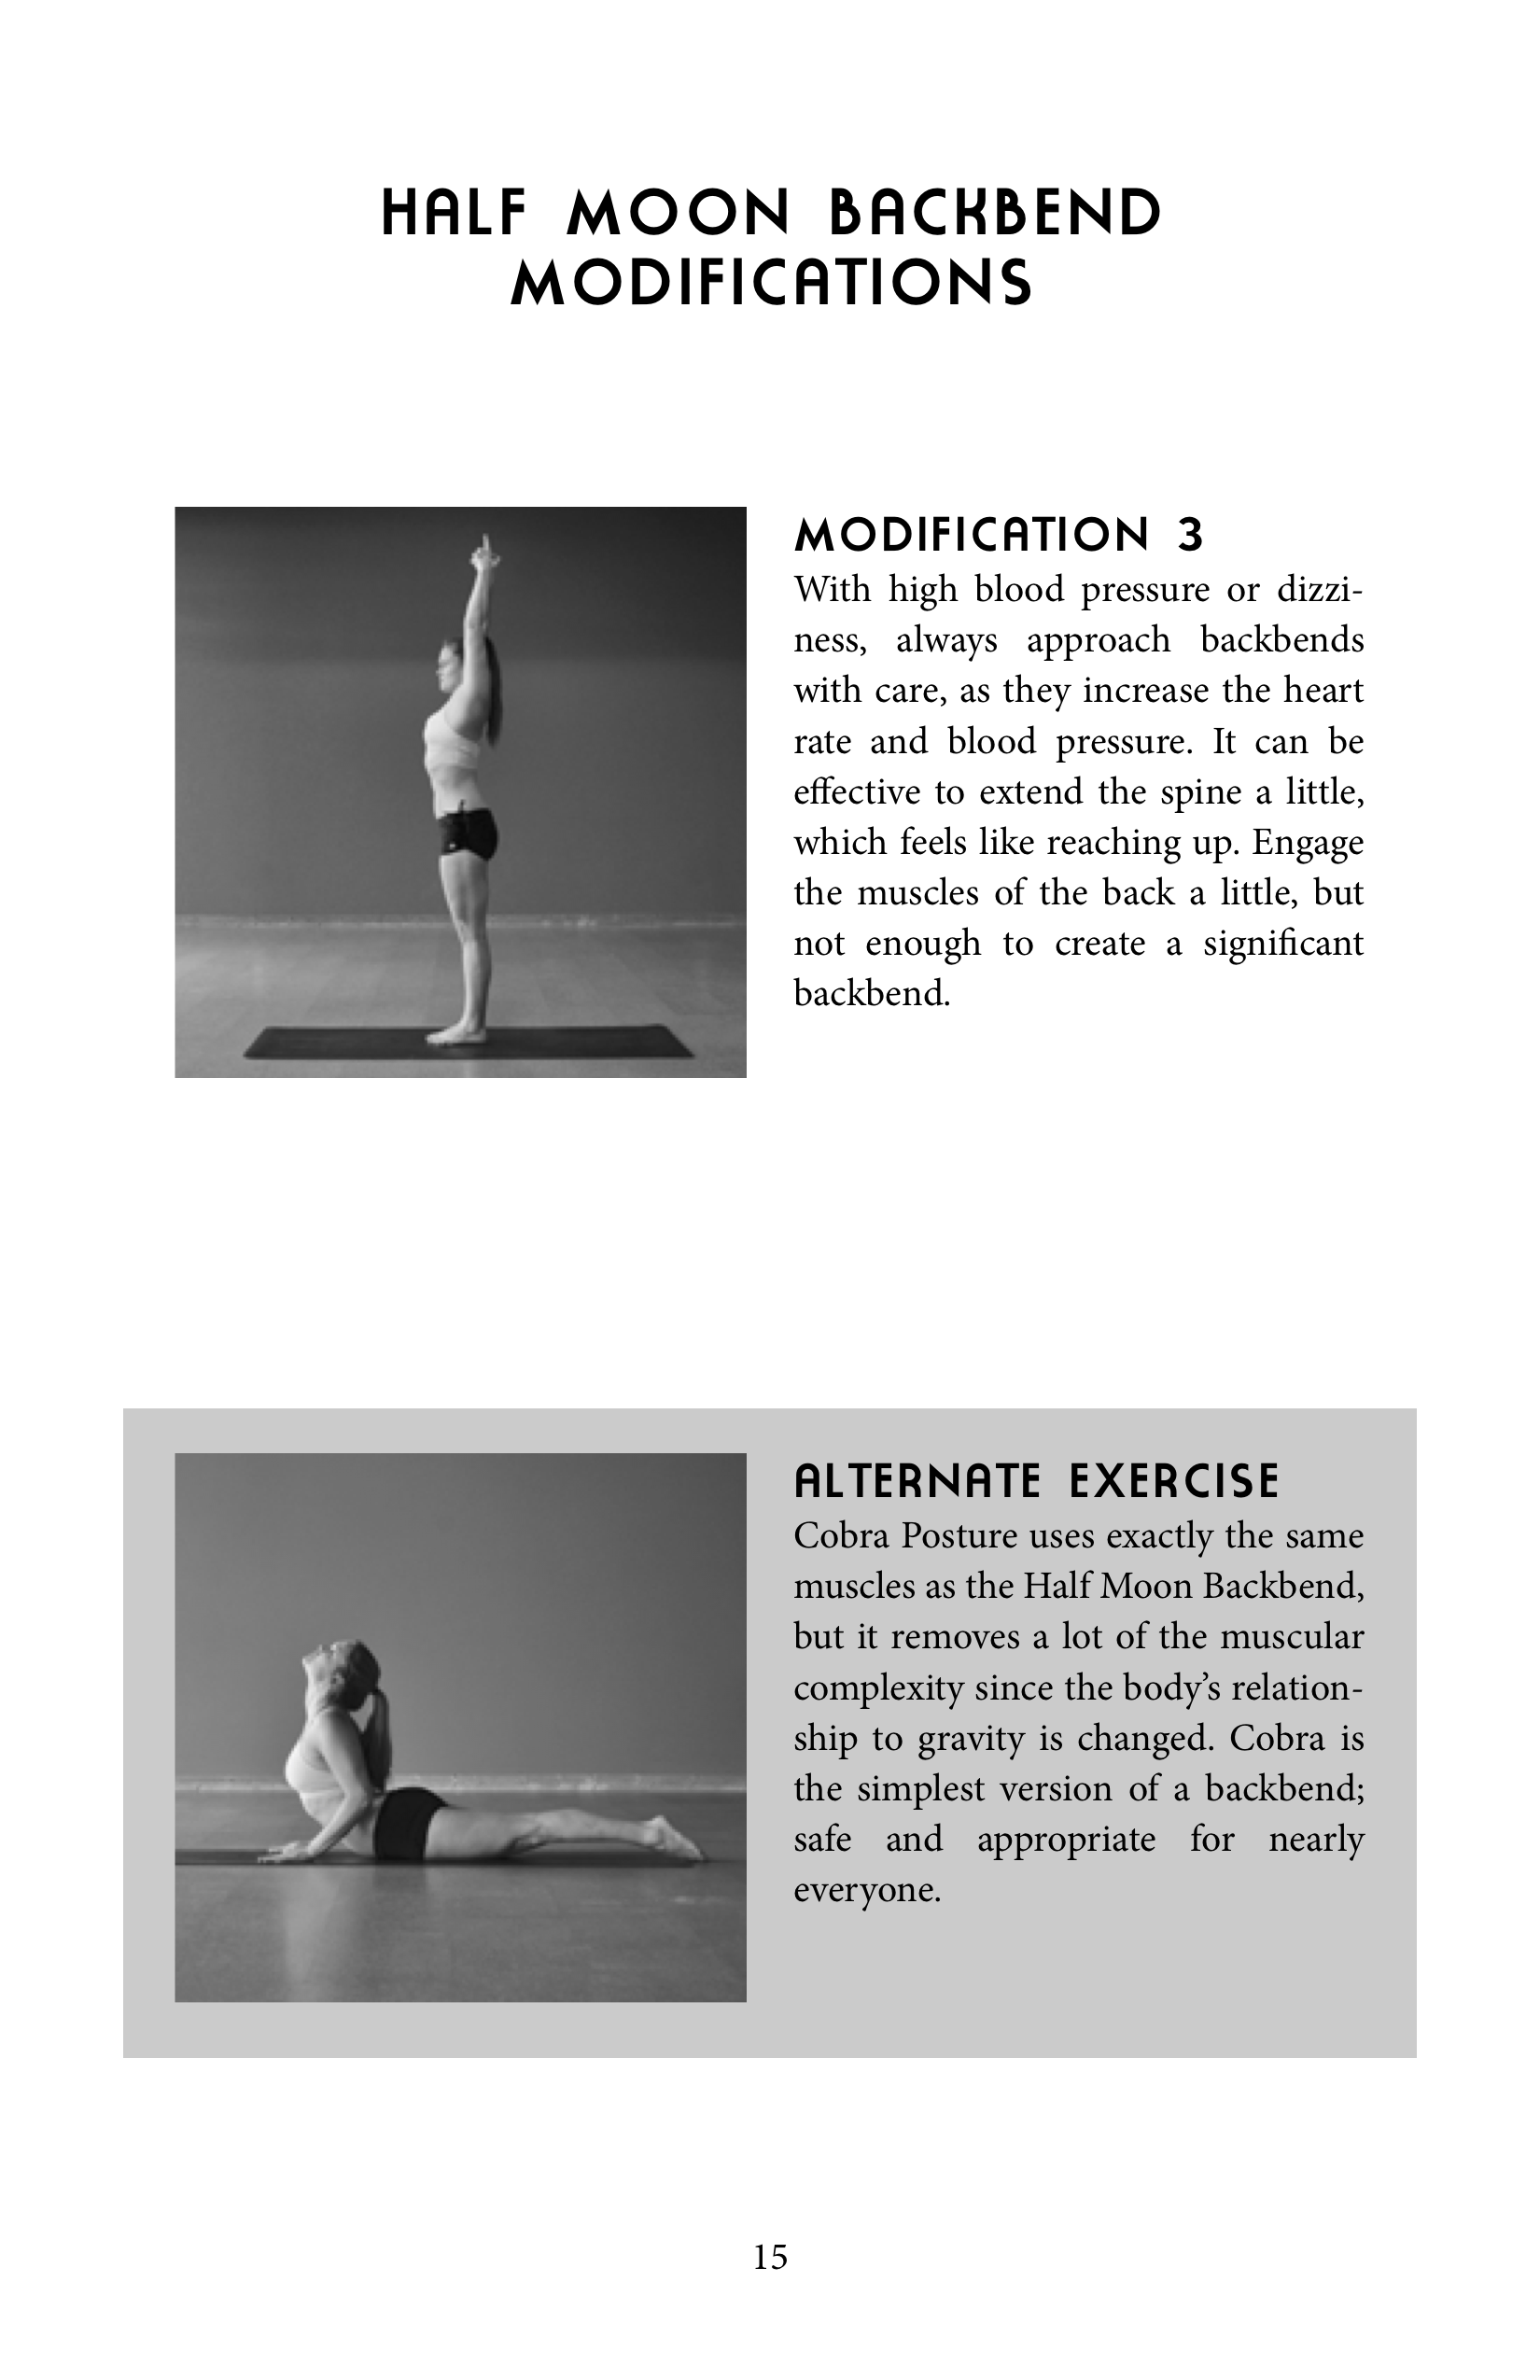 All 26 Bikram Yoga Postures Explained for Beginners | Socially Scared